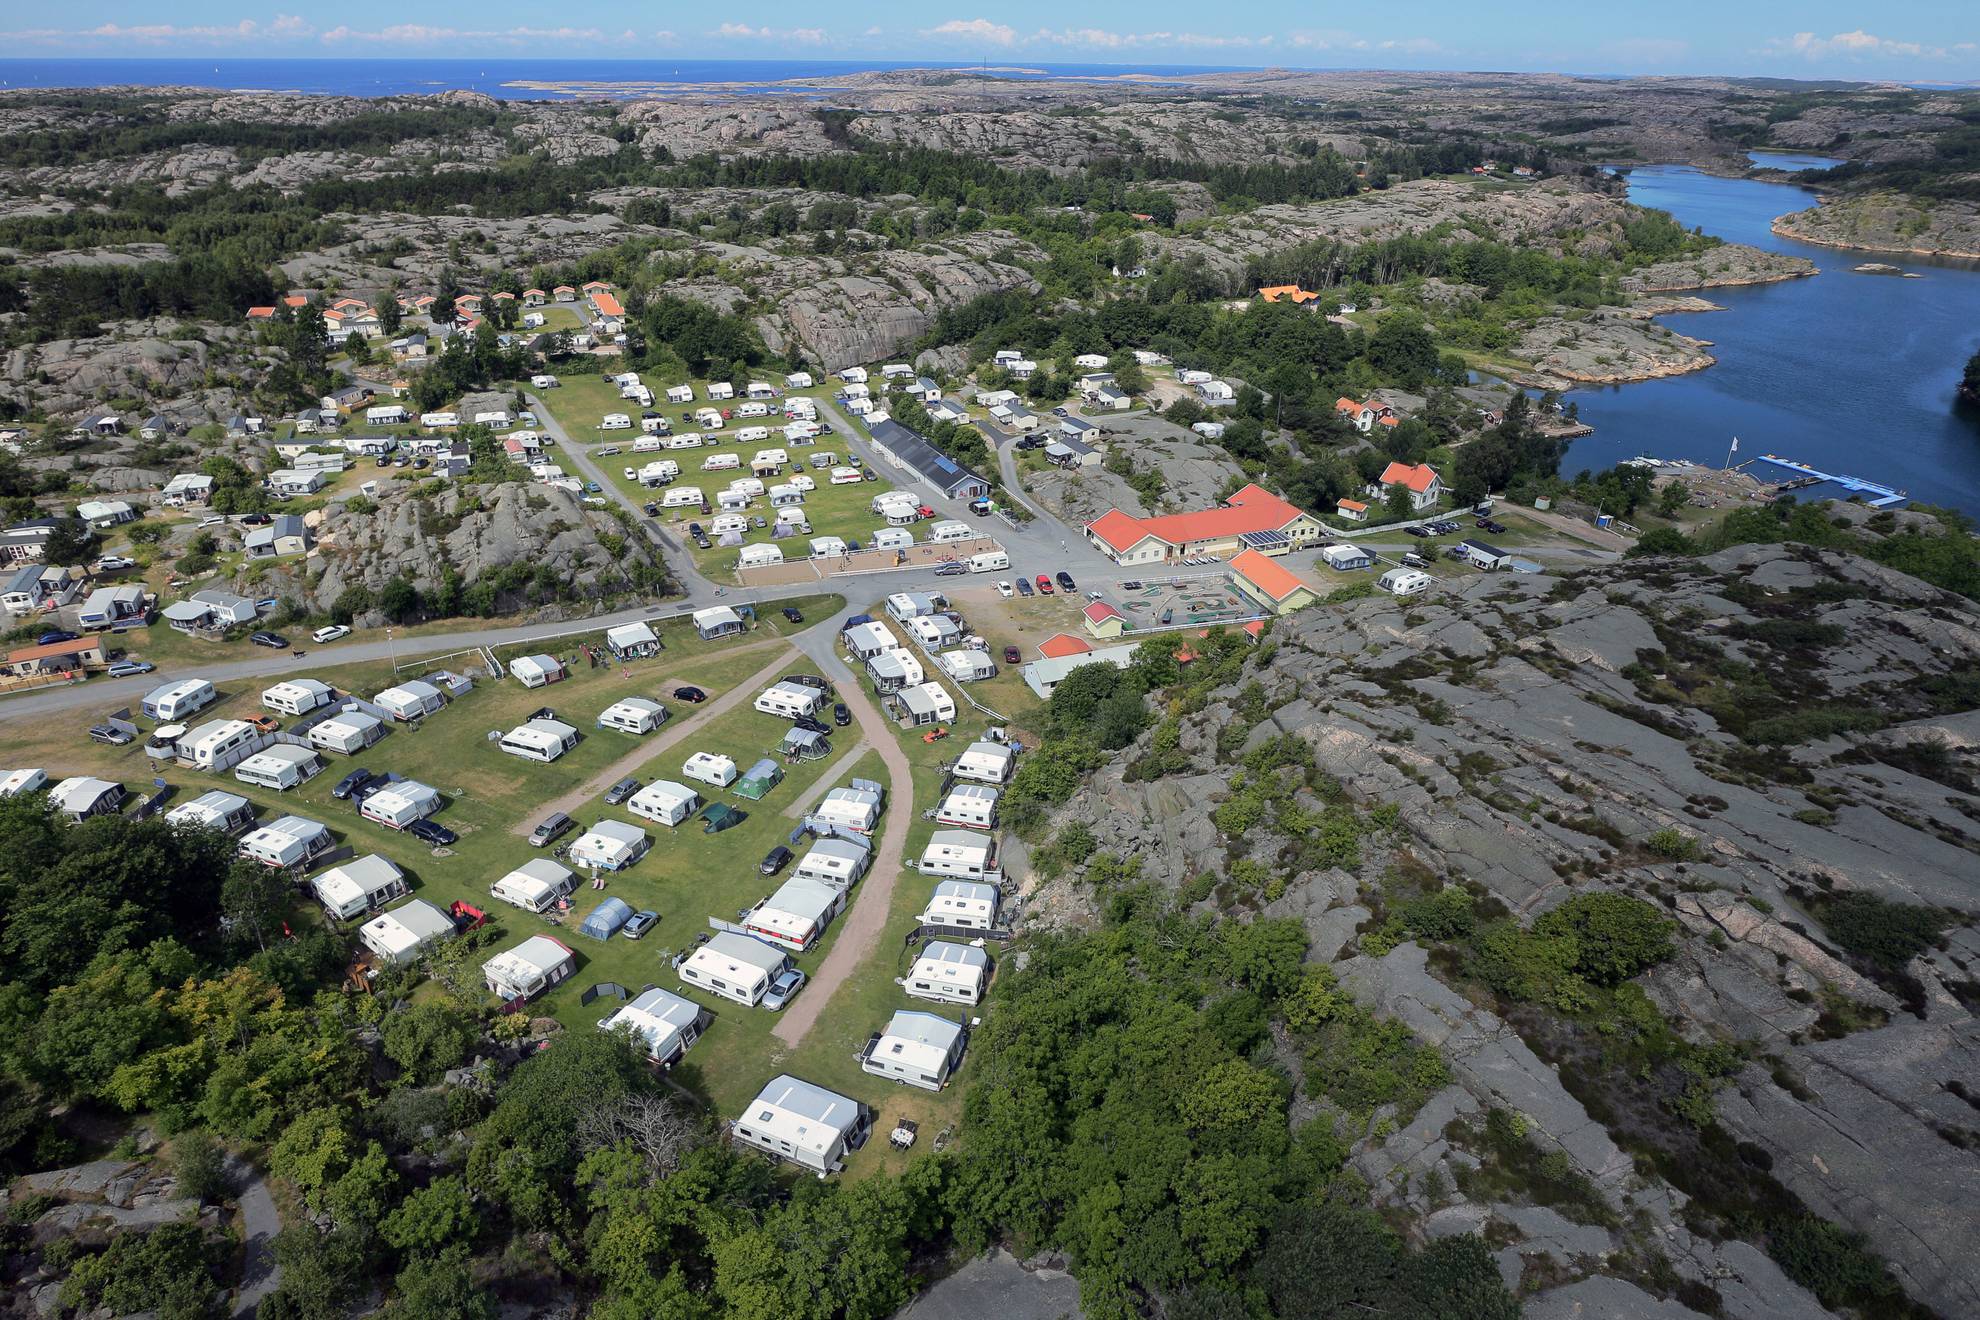 Luchtfoto van een camping aan zee. Caravans staan netjes in rijen geparkeerd.